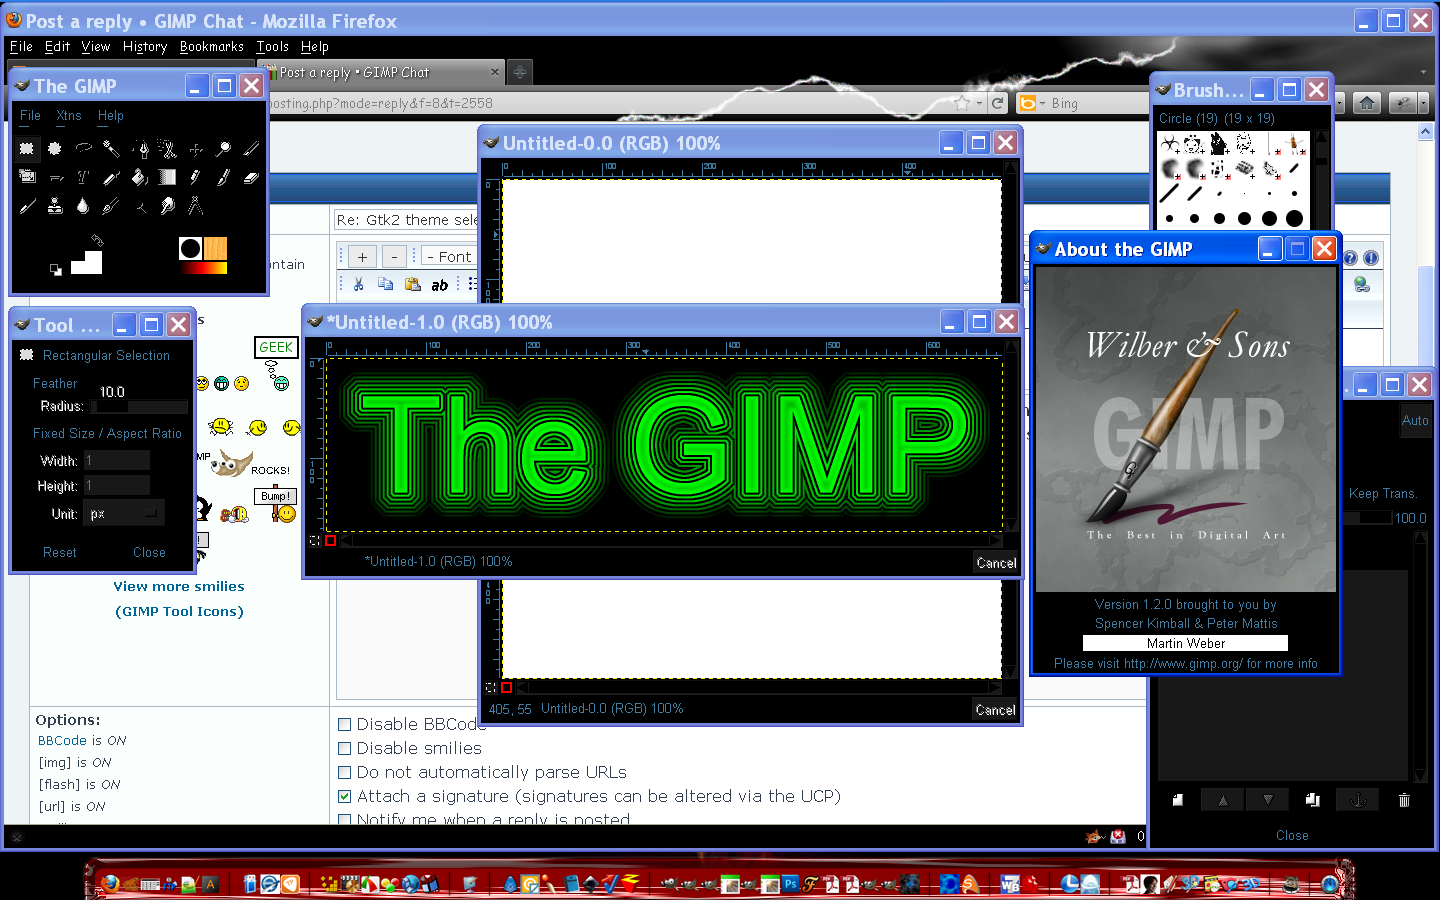 gimp 2.8.22 intl.dll files